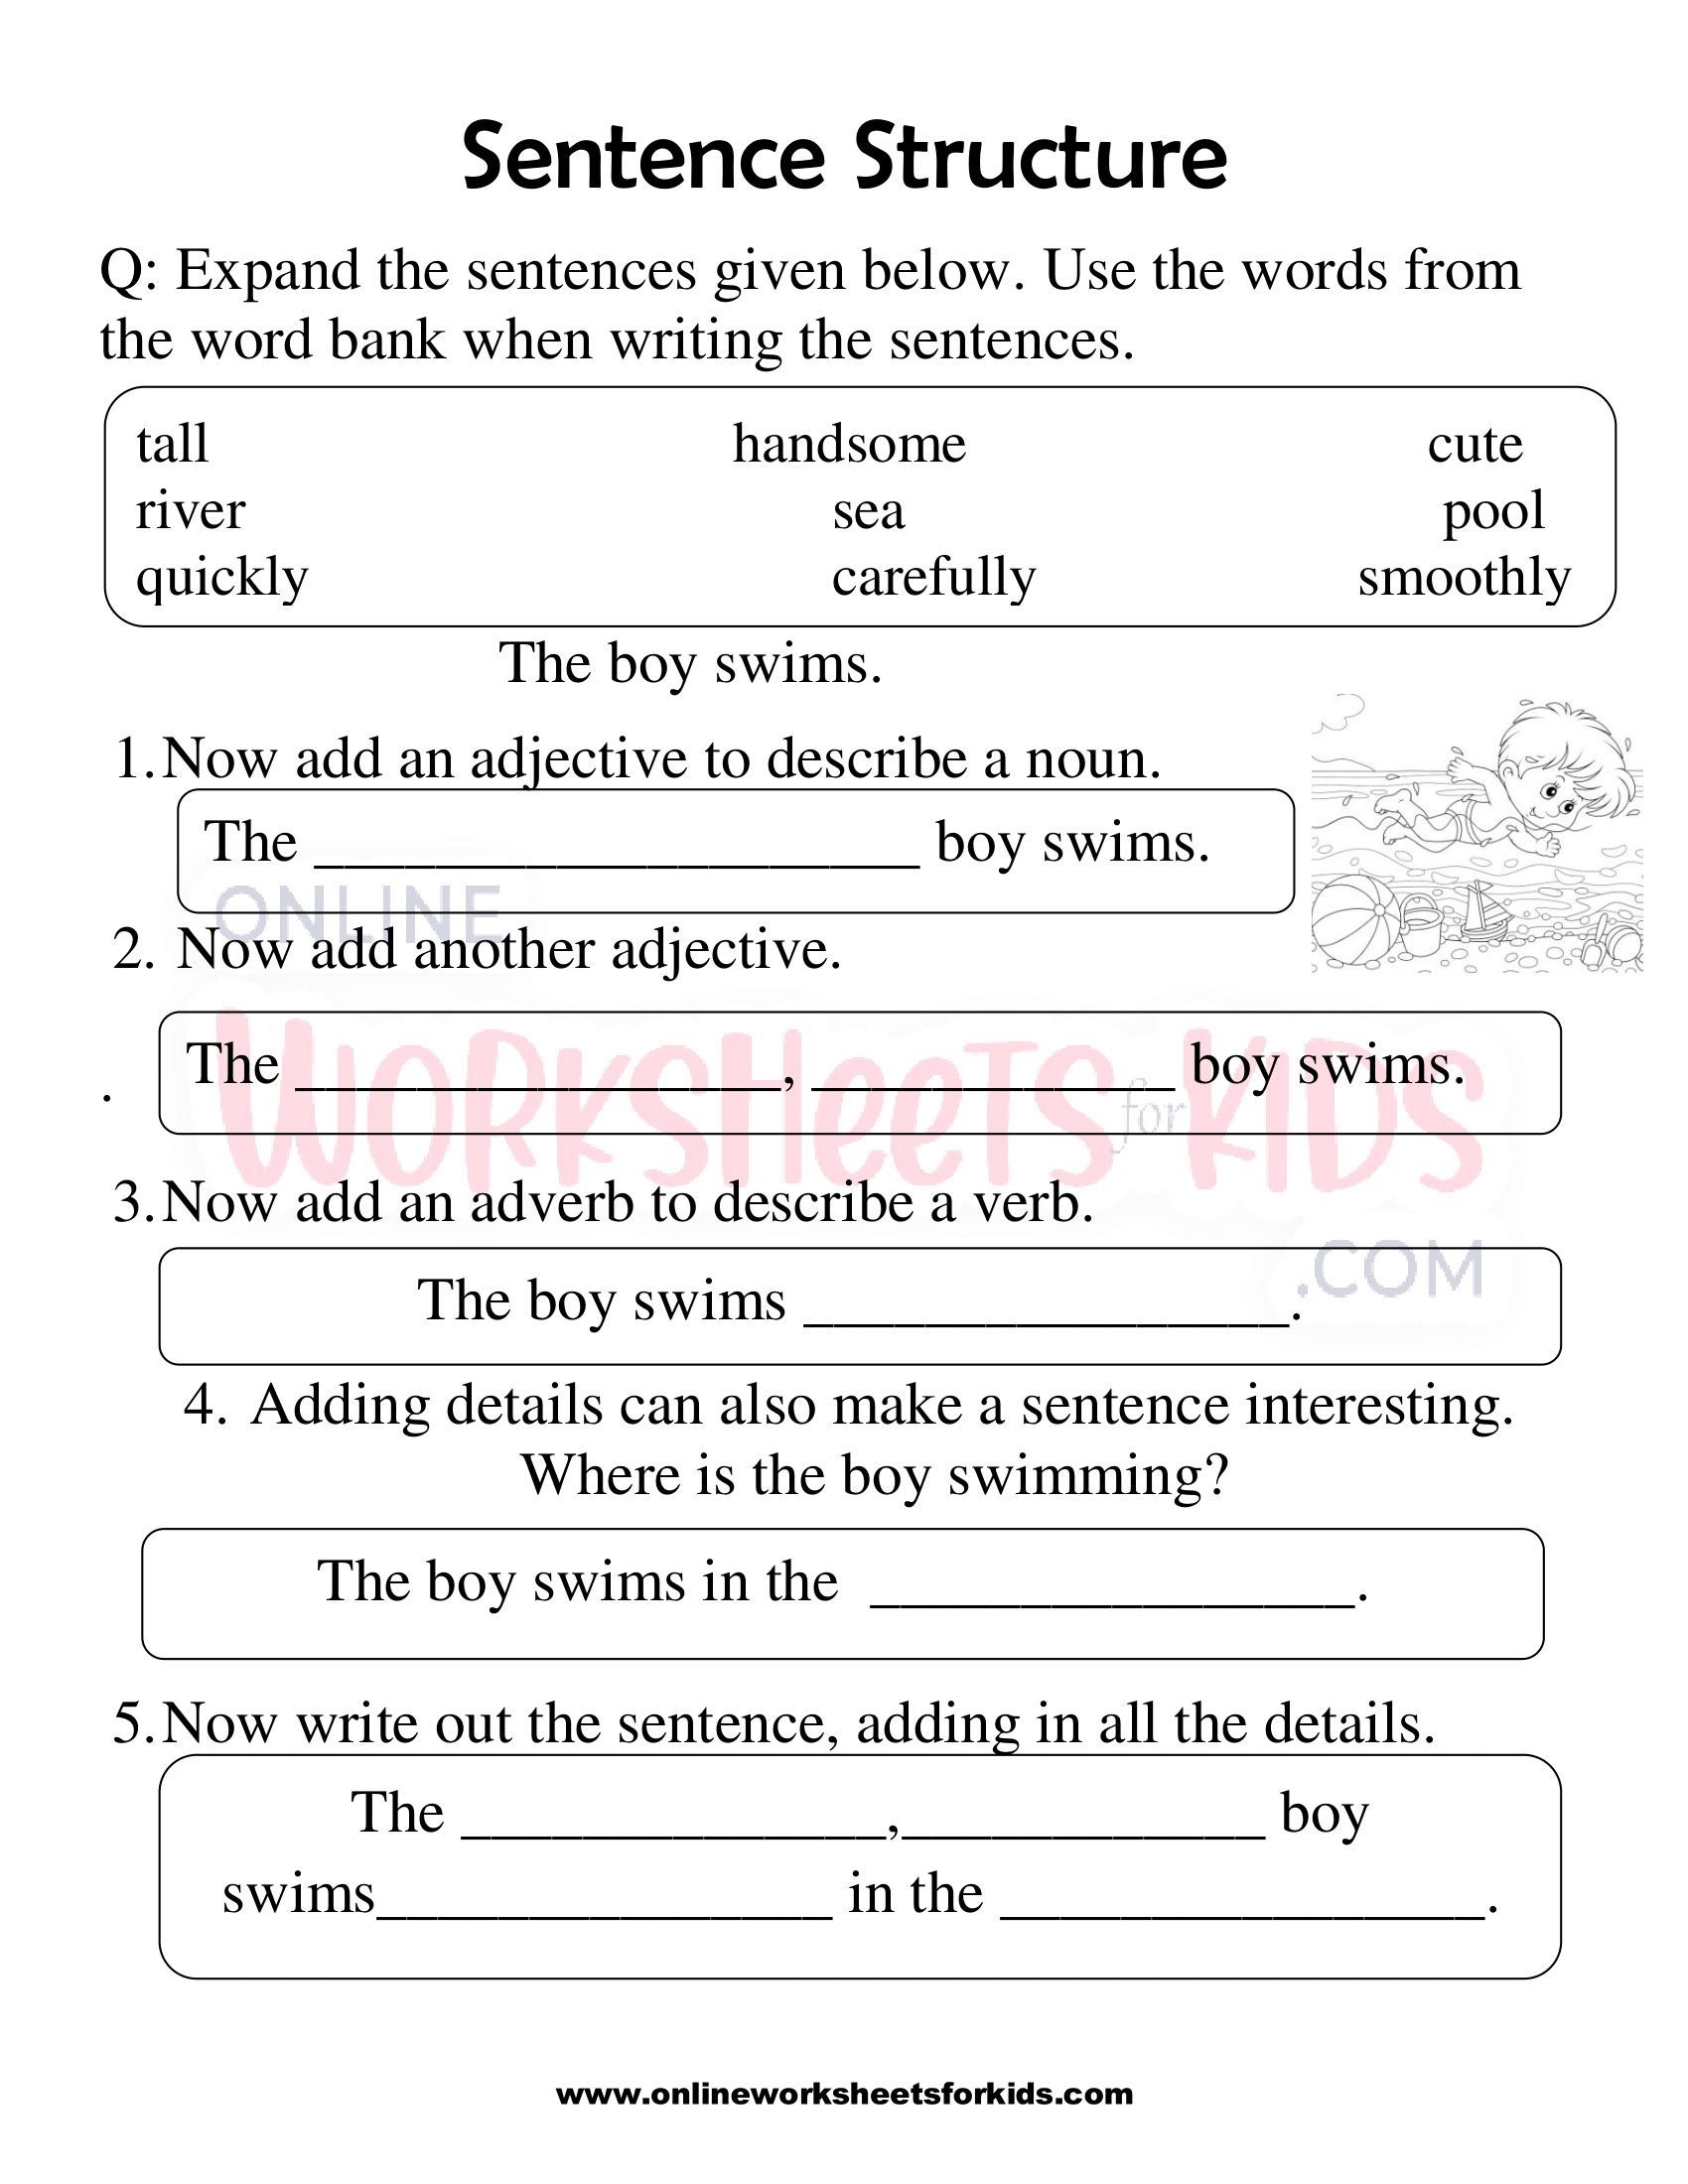 sentence-structure-worksheets-1st-grade-3